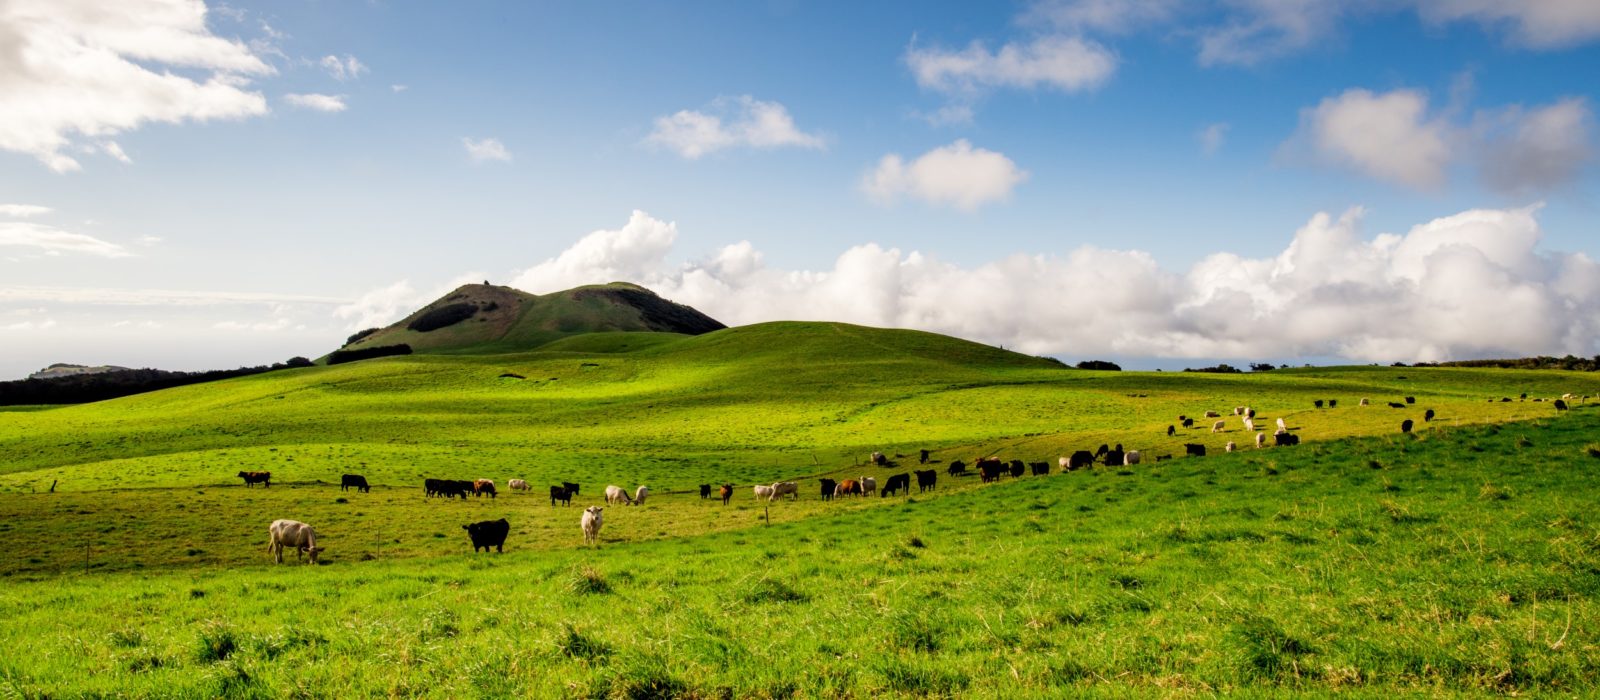 Cattle grazing in Hawaii